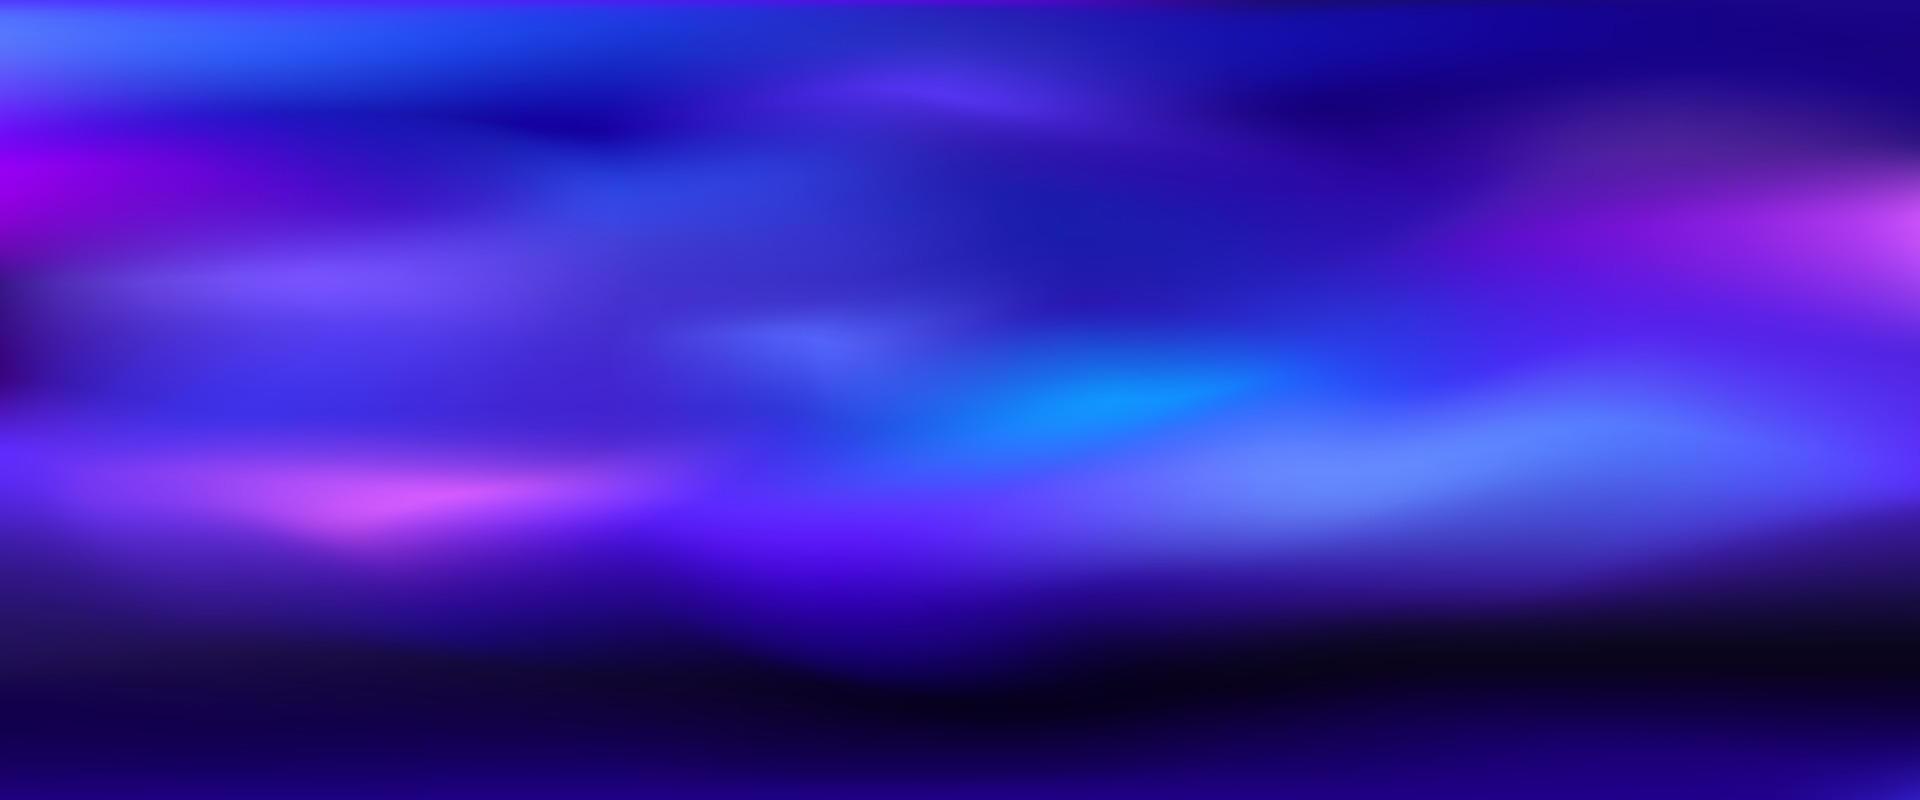 abstract illustratie blauw achtergrond met deeltjes, vector